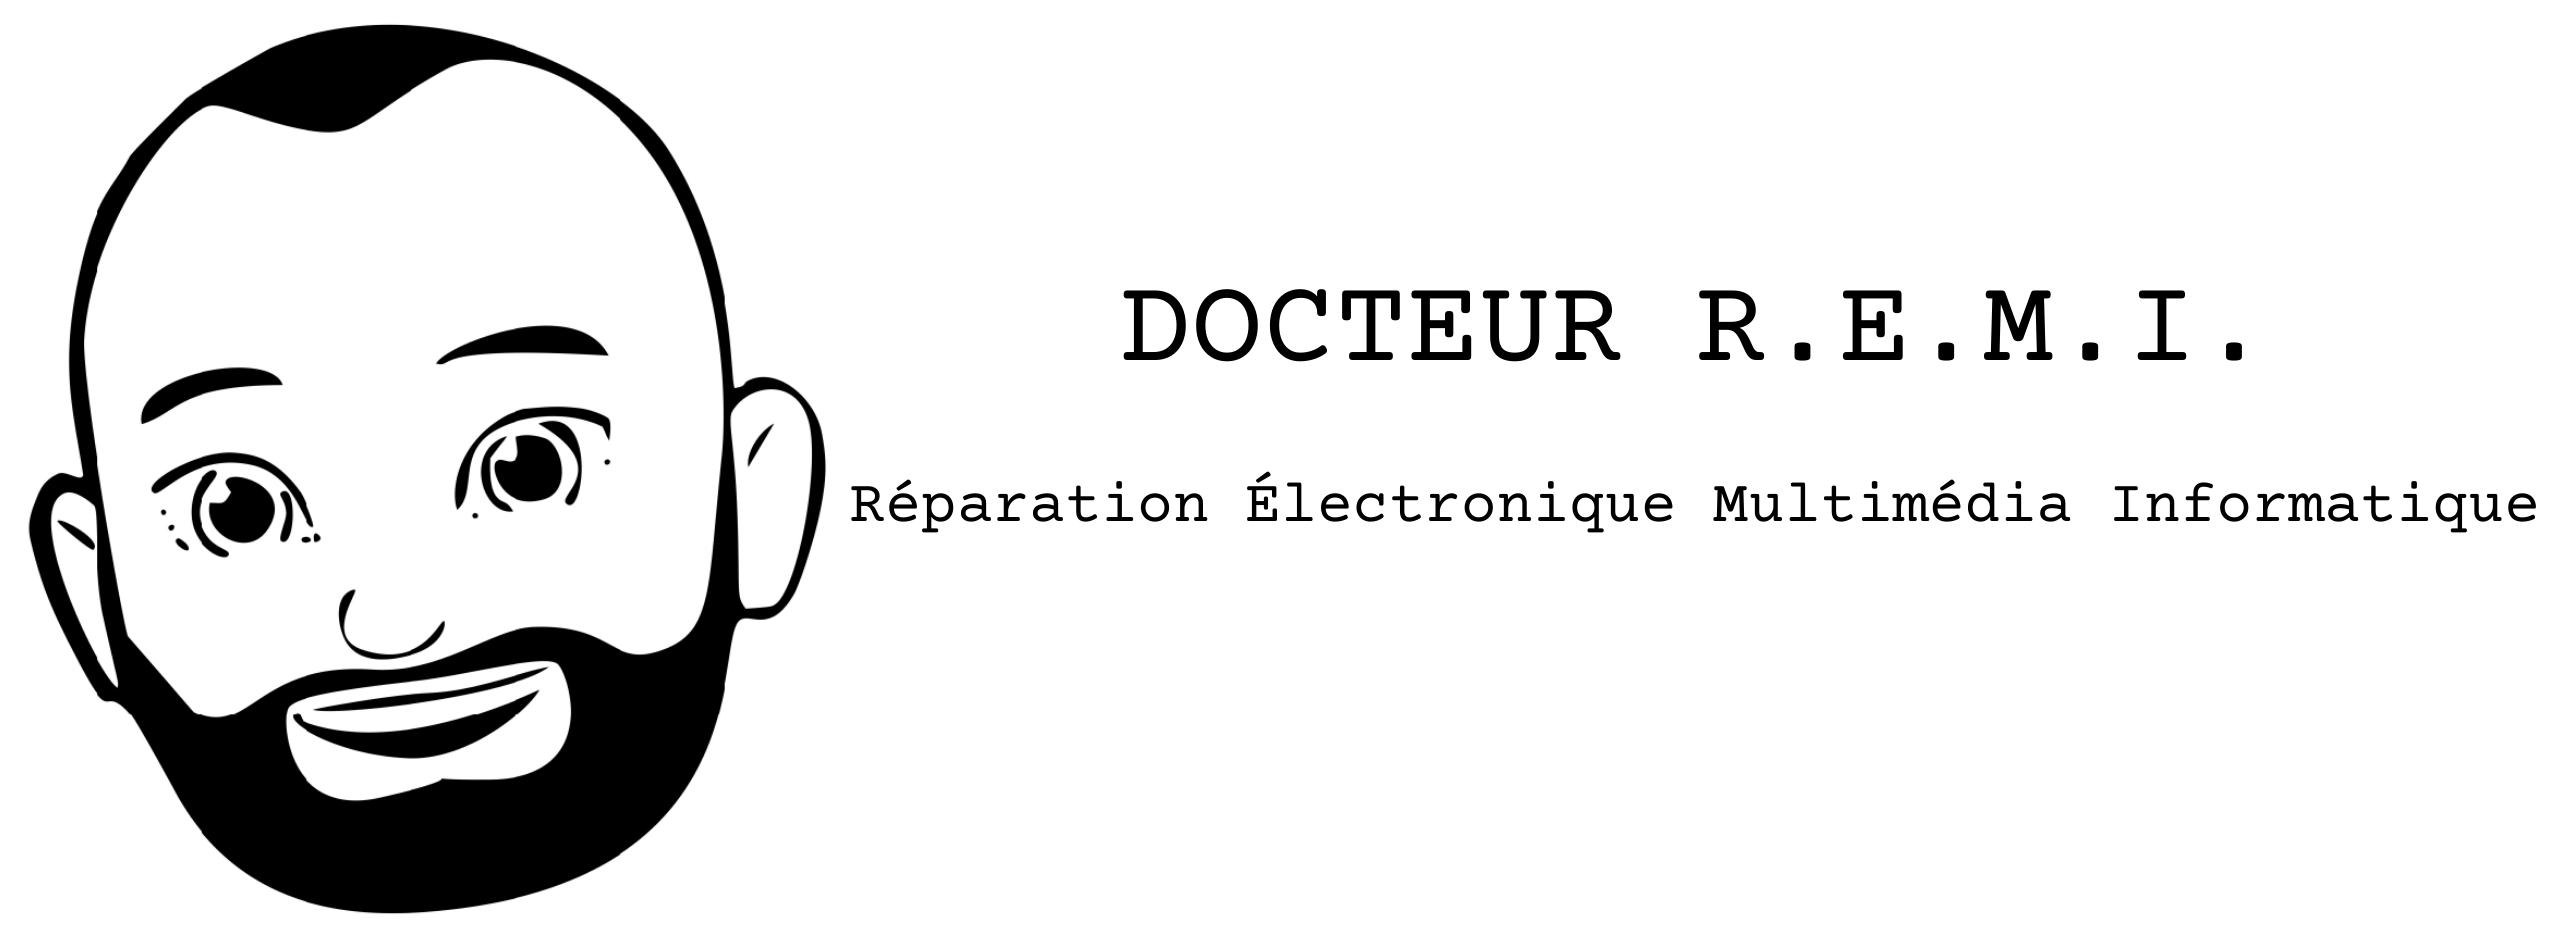 DOCTEUR R.E.M.I.